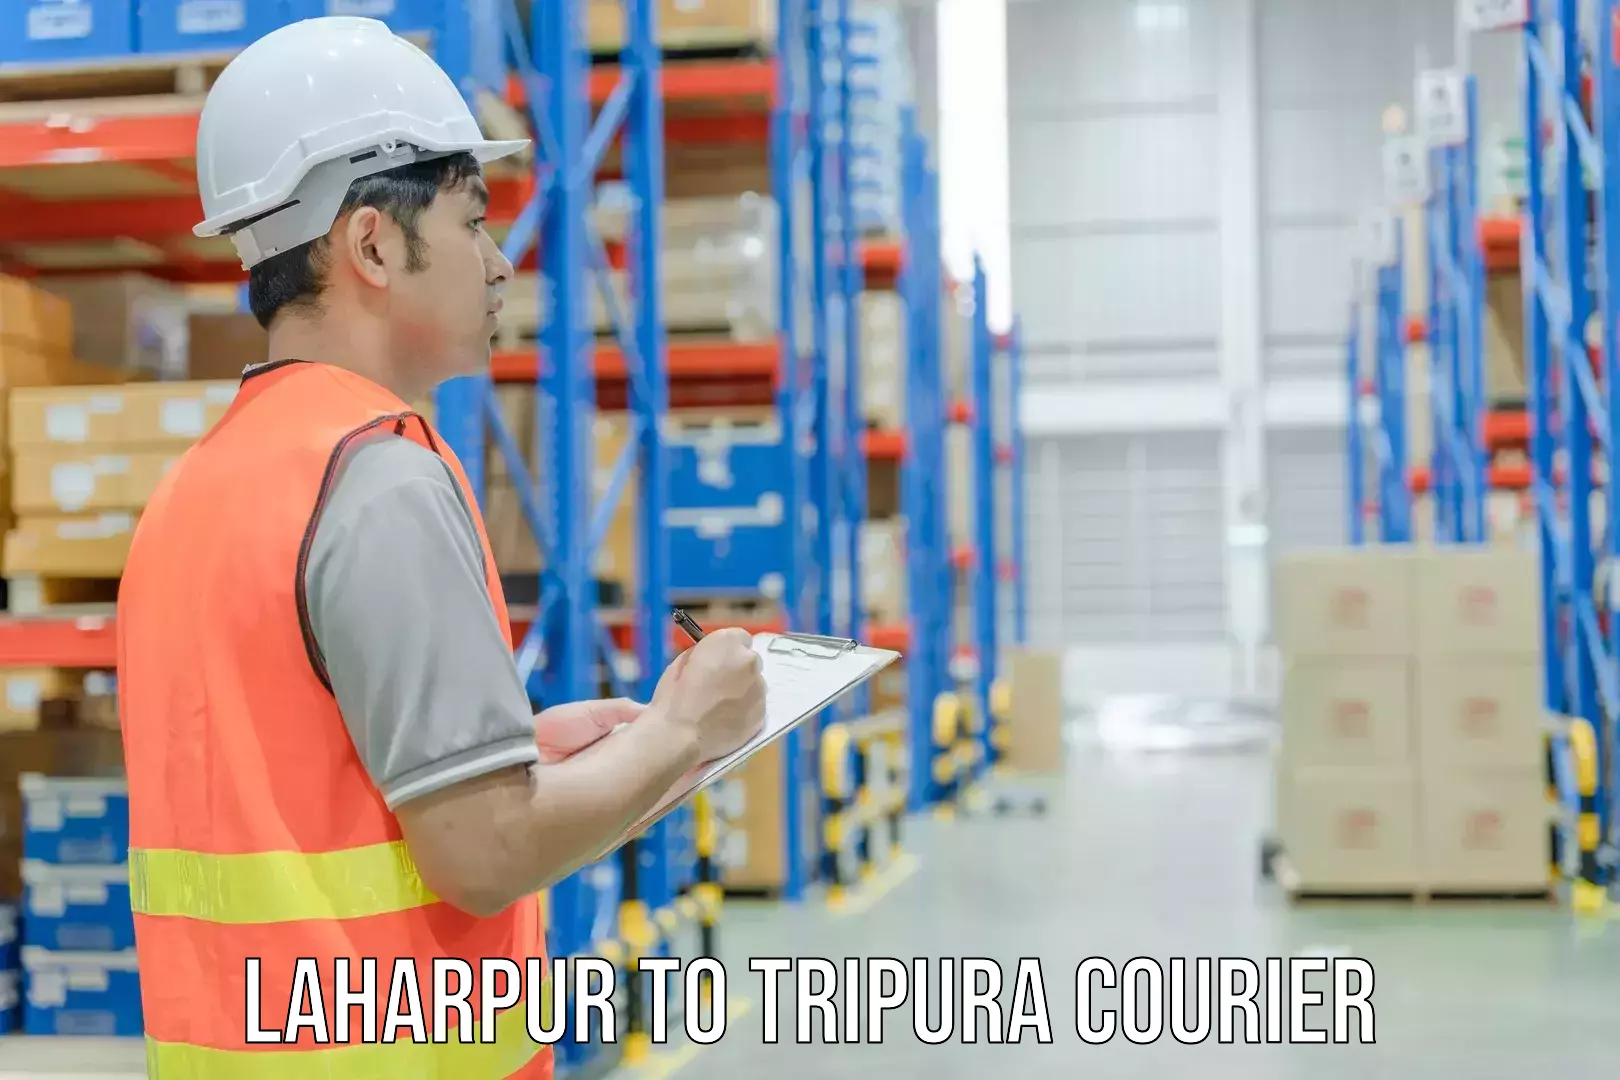 Business shipping needs Laharpur to Santirbazar